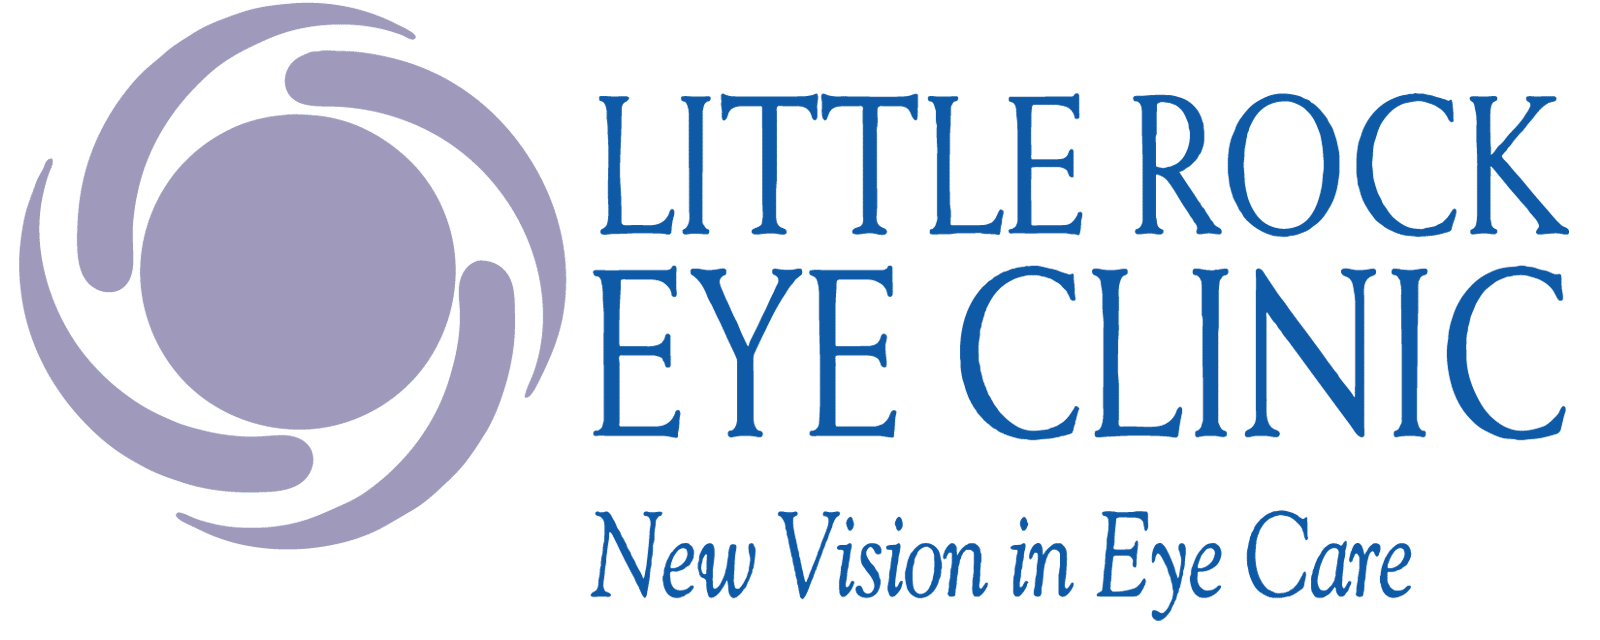 Little Rock Eye Clinic